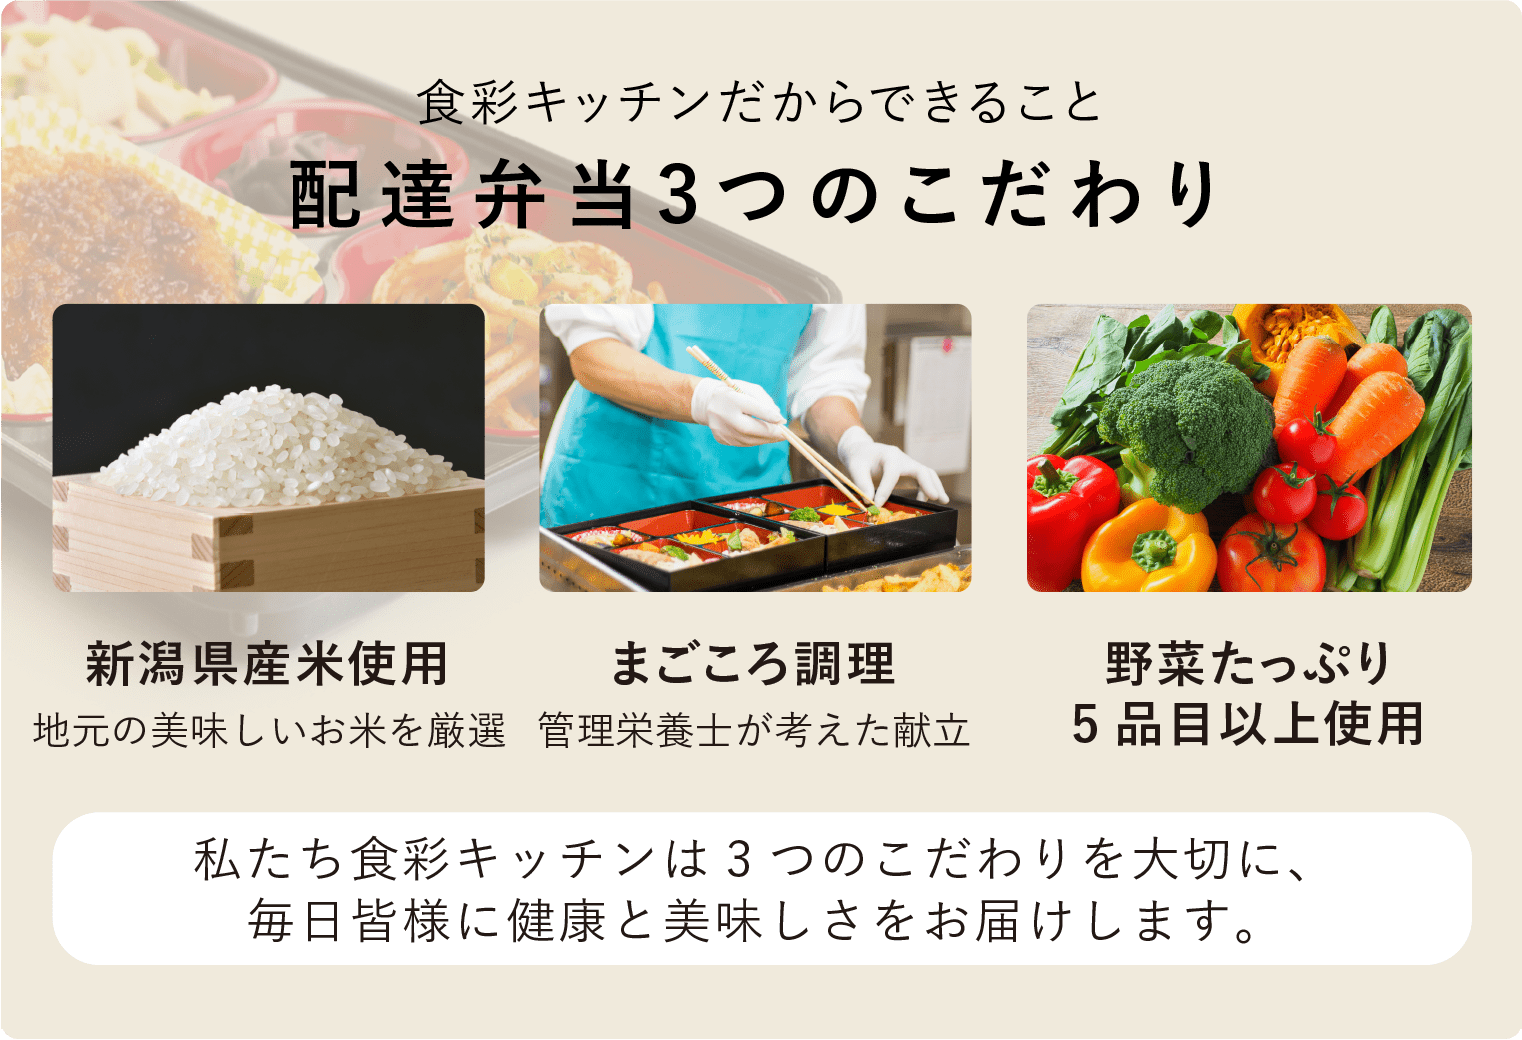 食彩キッチンだからできること「配達弁当3つのこだわり」新潟県産米使用（地元の美味しいお米を厳選）・まごころ調理（管理栄養士が考えた献立）・野菜たっぷり（5品目以上使用）私たち食彩キッチンは3つのこだわりを大切に、毎日皆様に健康と美味しさをお届けします。